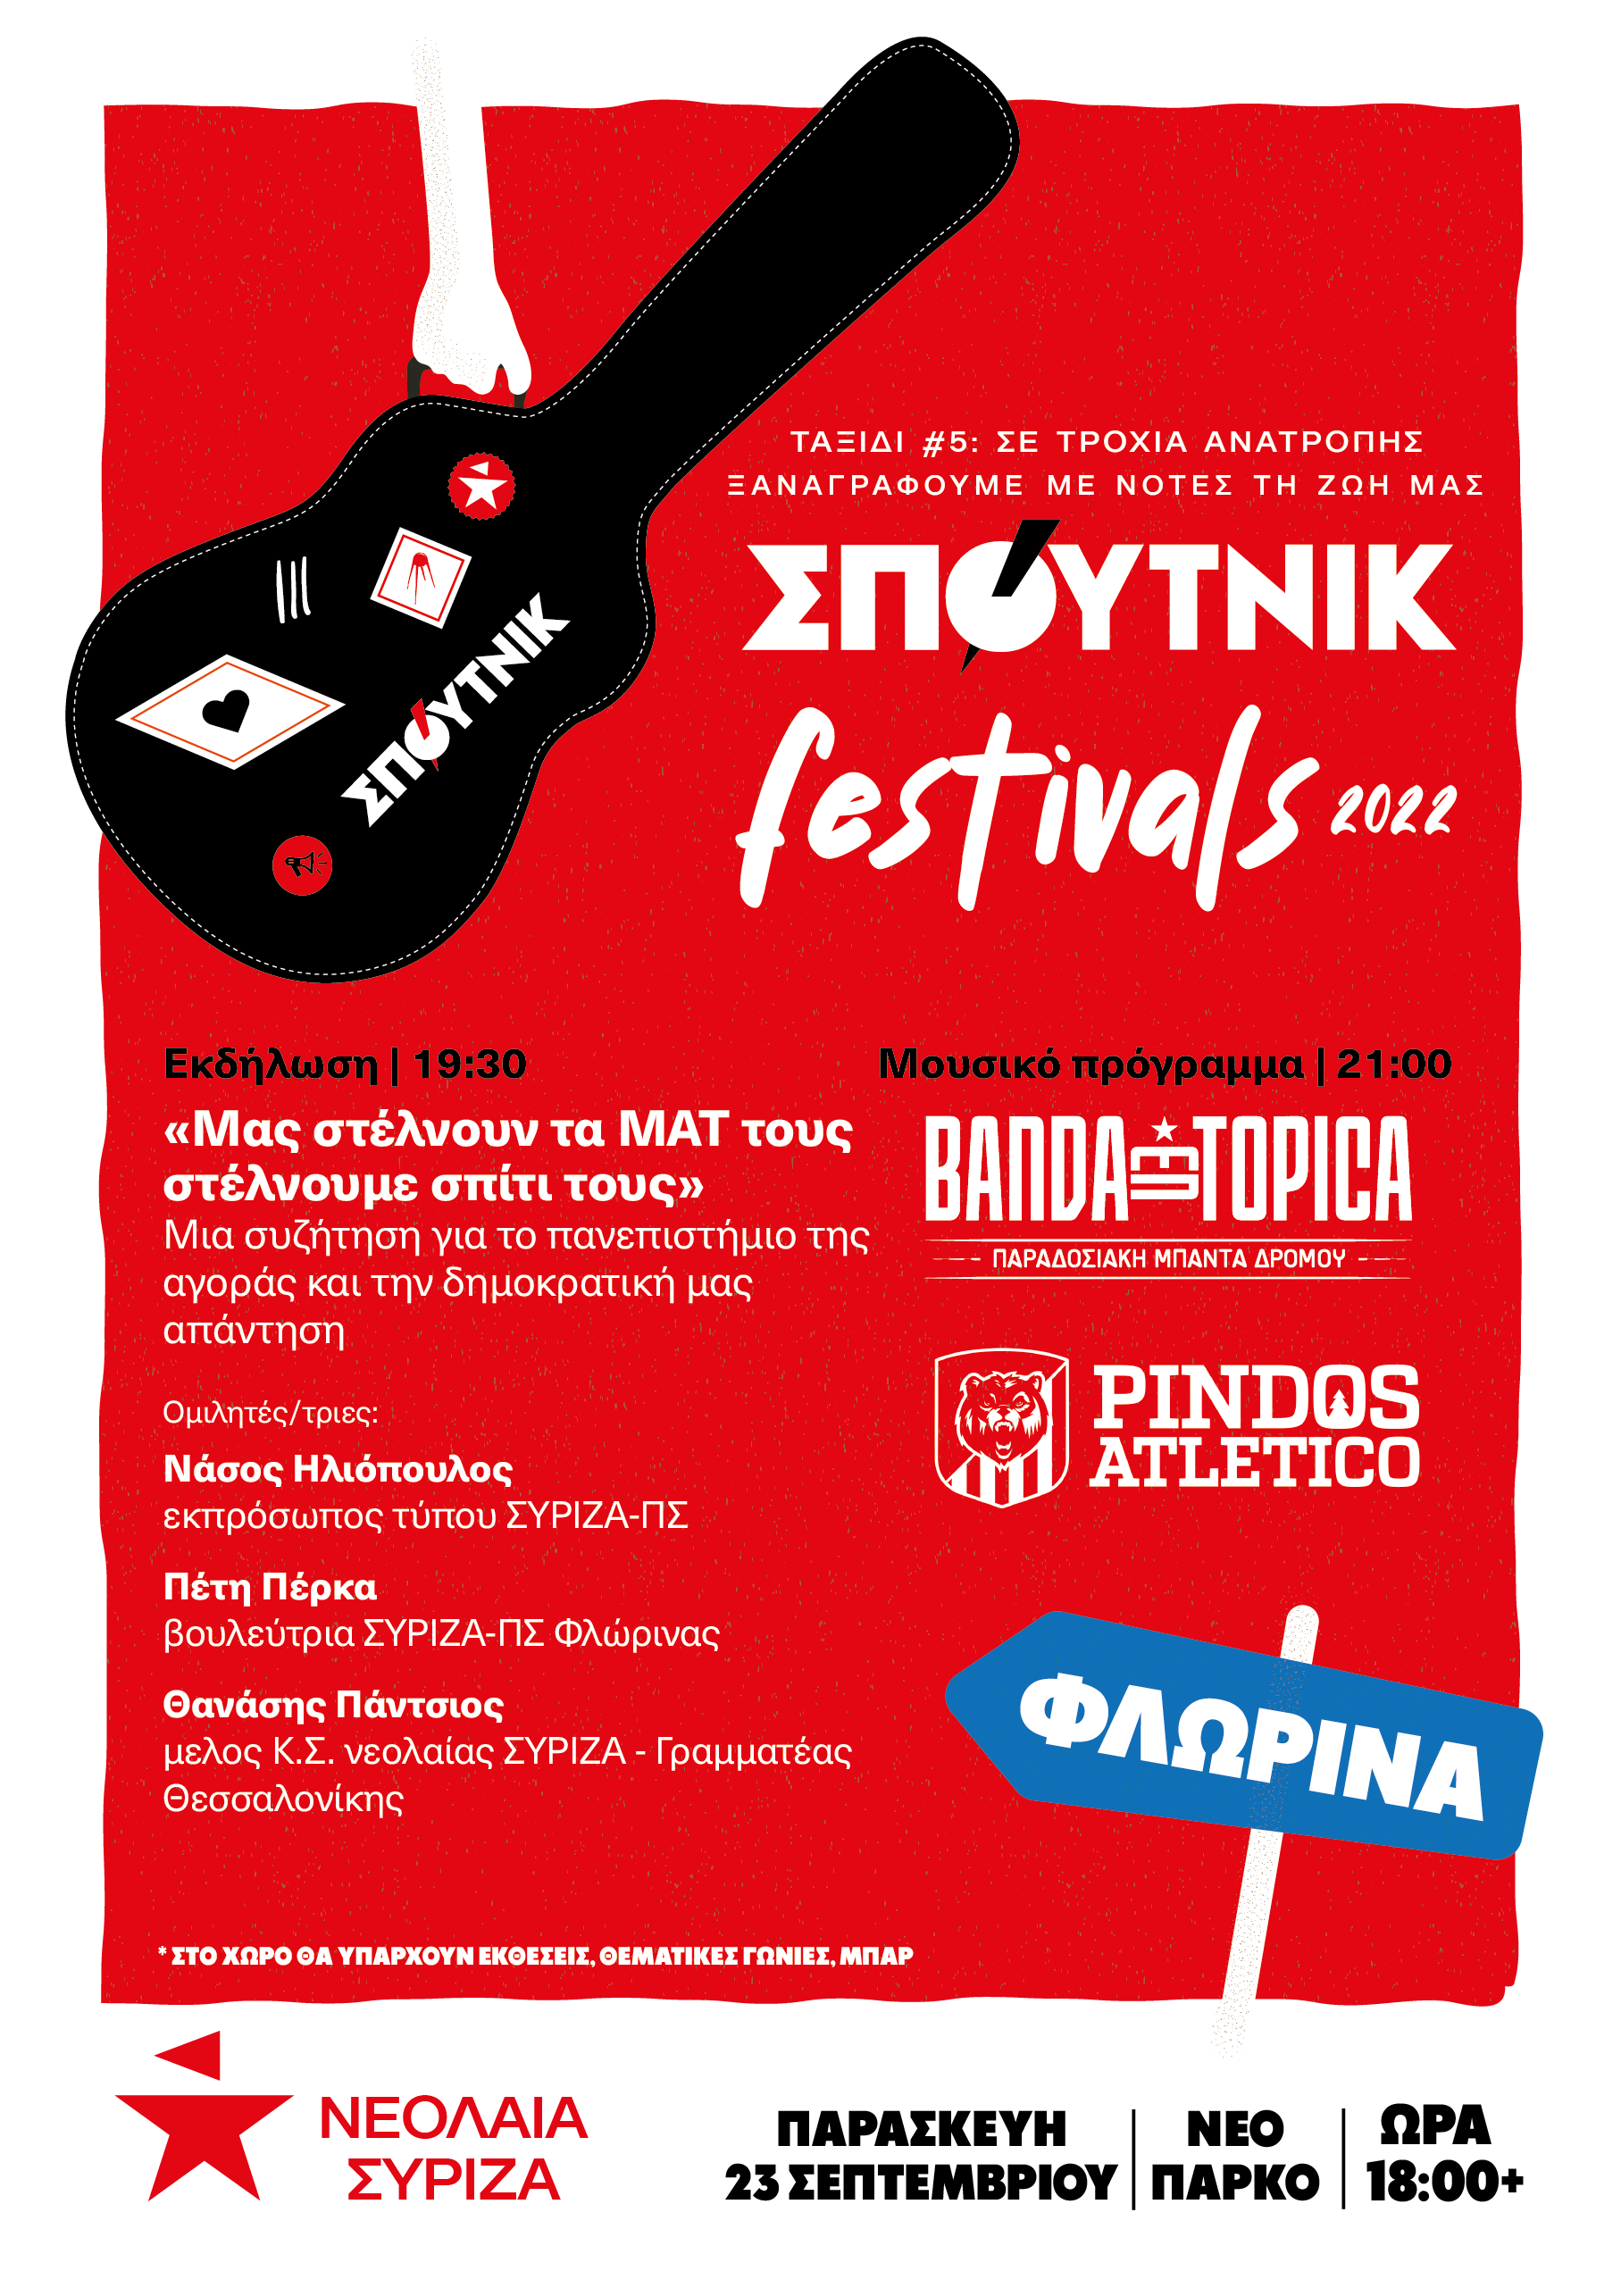 Νεολαία ΣΥΡΙΖΑ Δυτικής Μακεδονίας : Το ΣΠΟΥΤΝΙΚ Φεστιβάλ Φλώρινας θα διεξαχθεί στο Νέο Πάρκο Φλώρινας την Παρασκευή 23 Σεπτεμβρίου